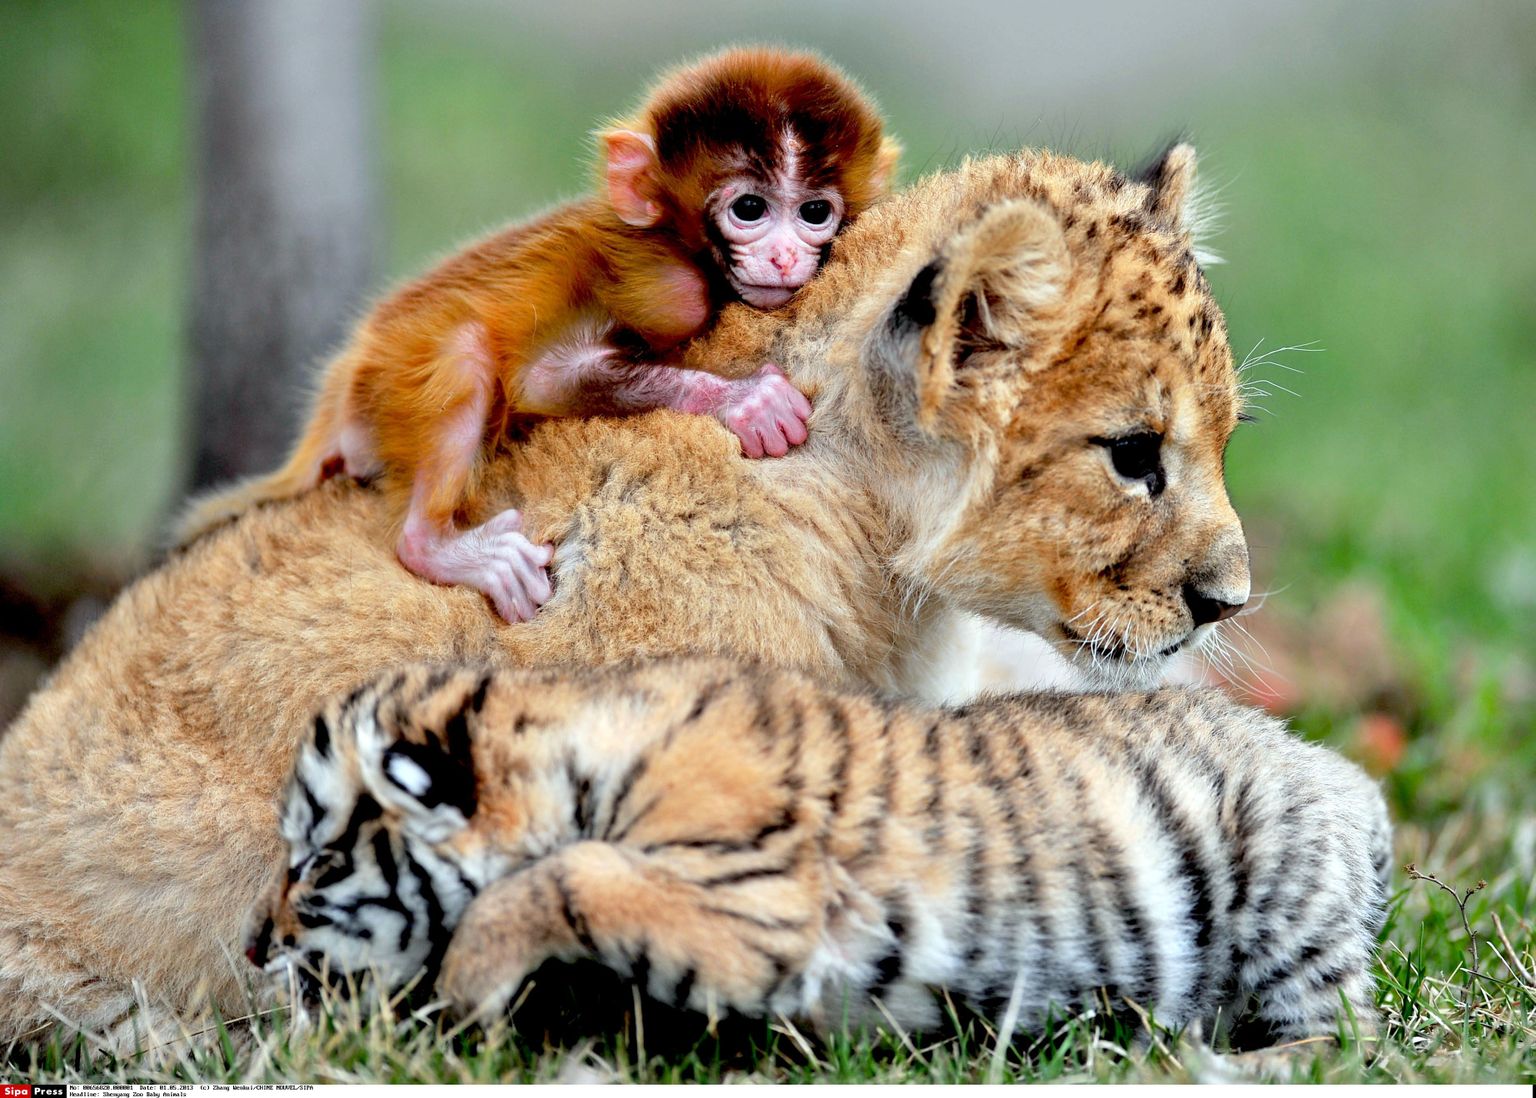 Suured sõbrad - ahv, tiiger ja lõvi